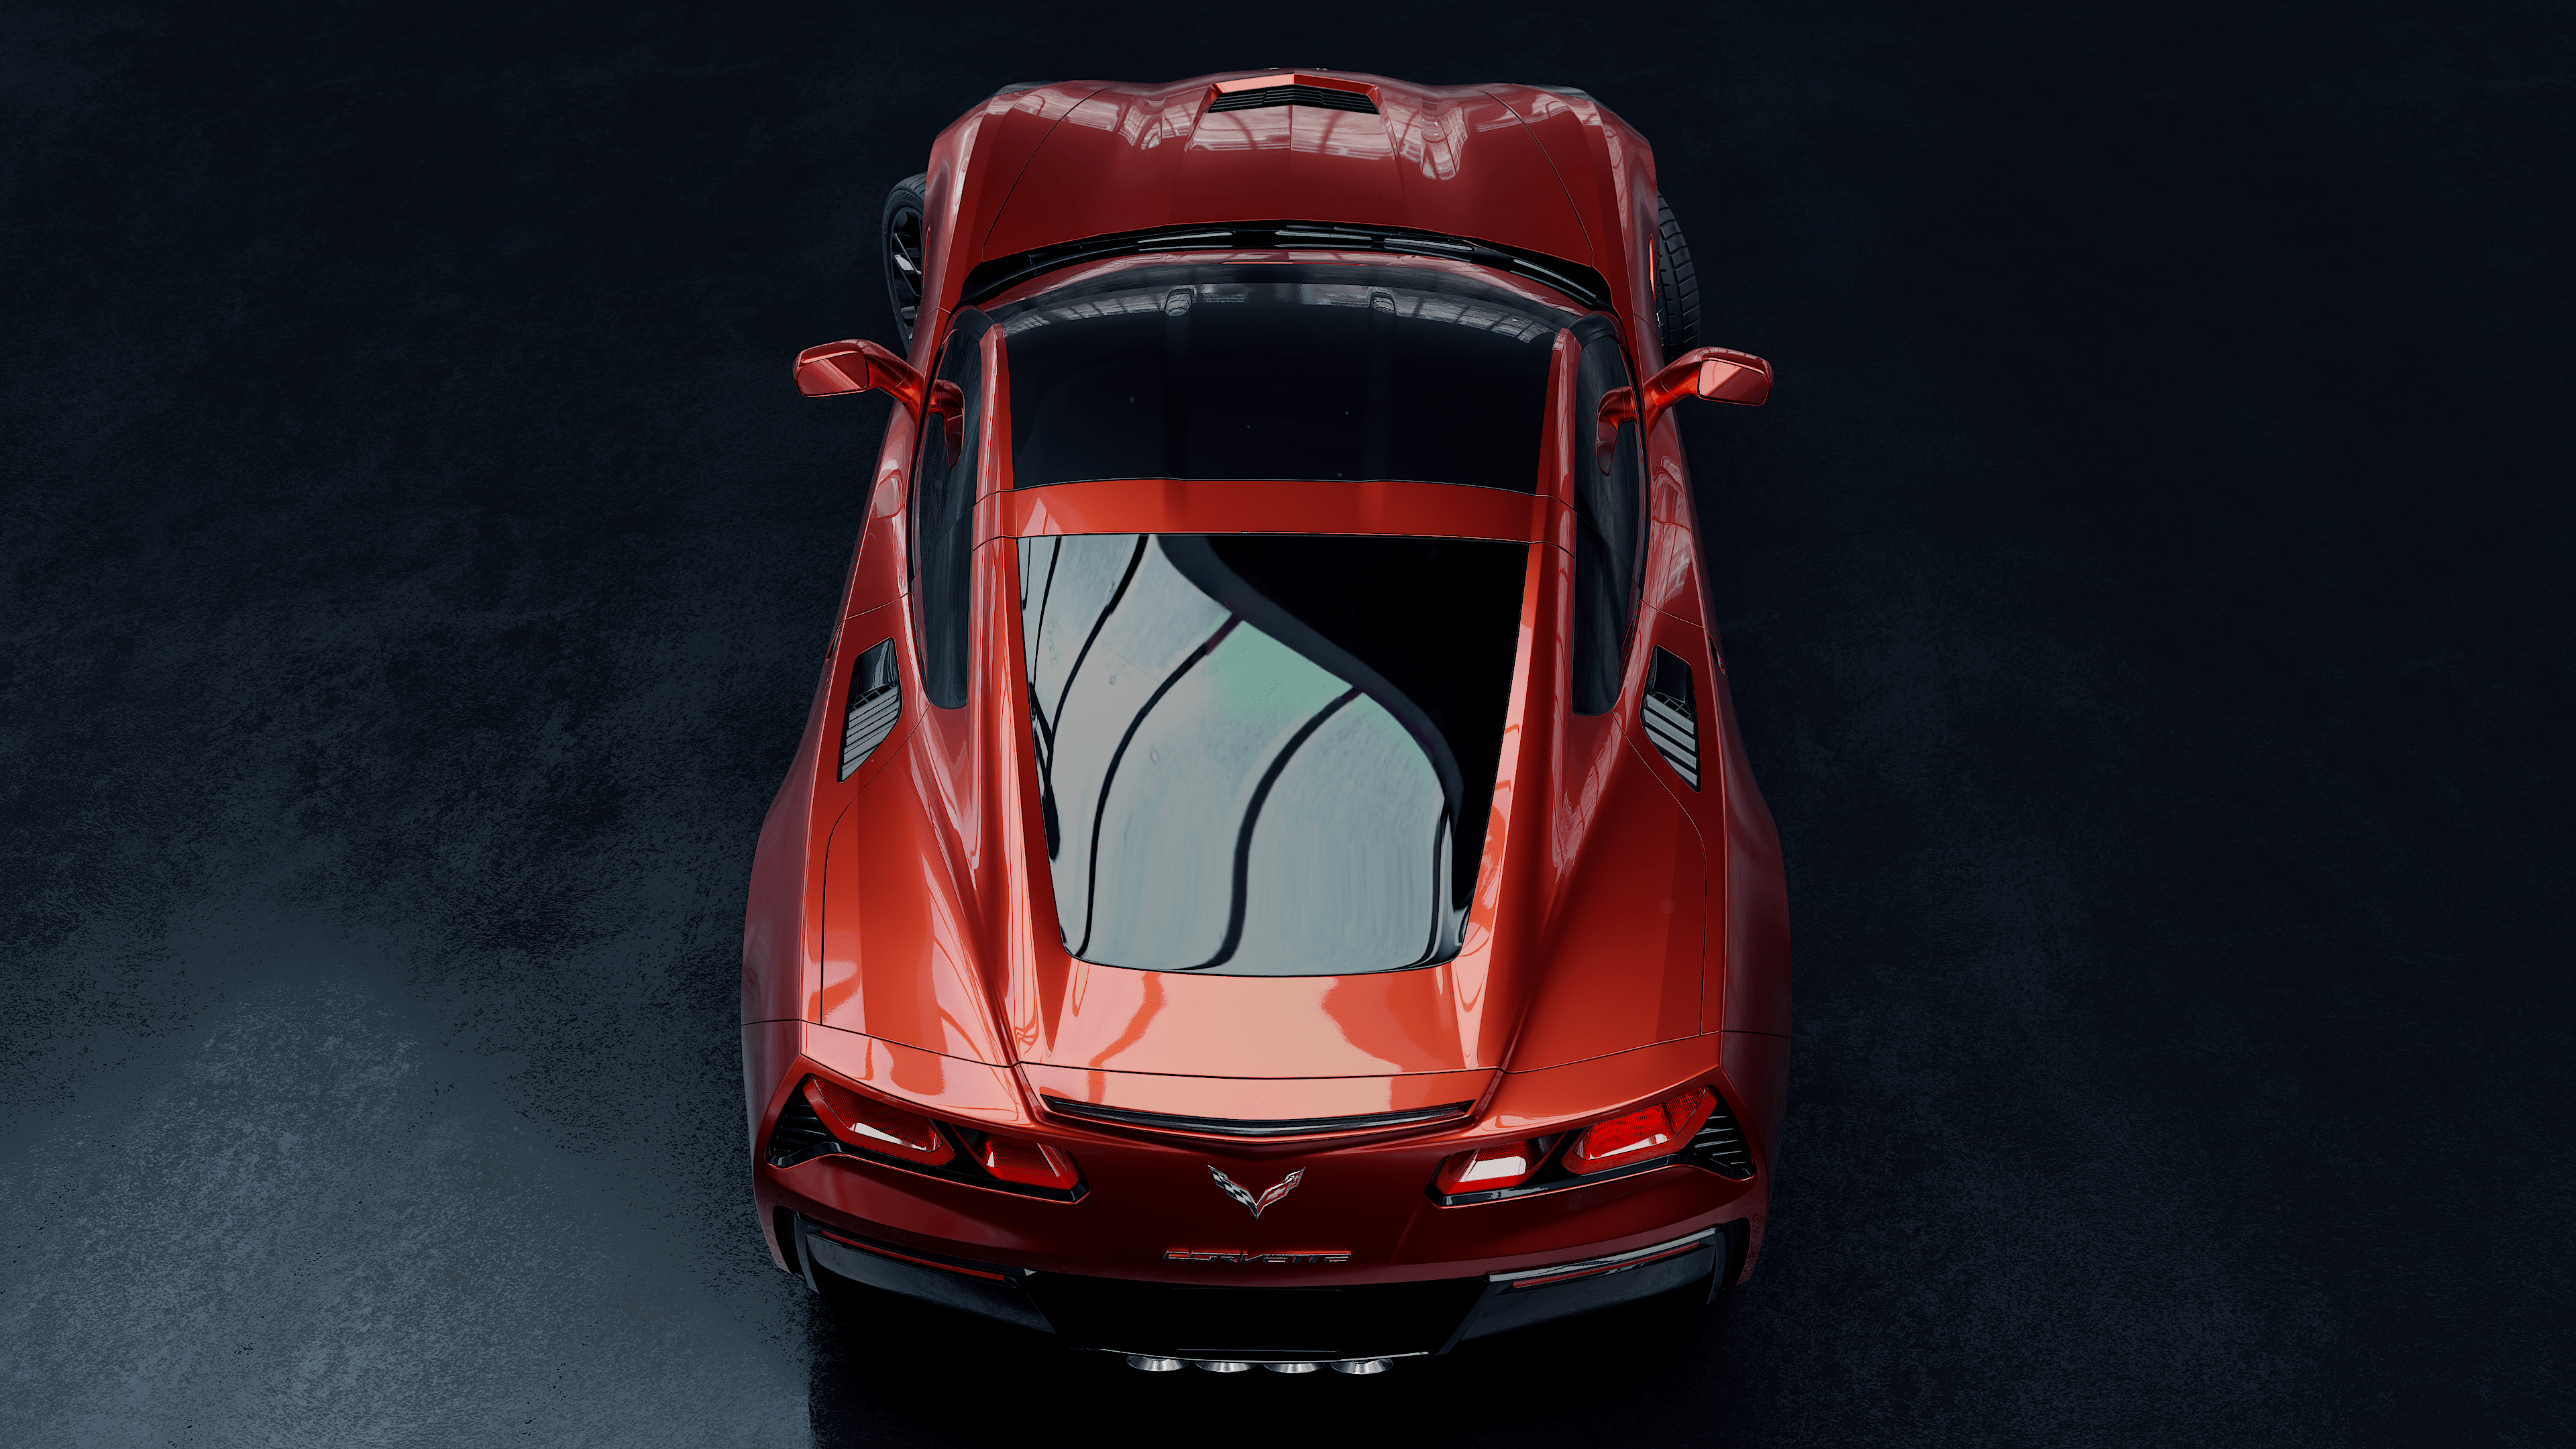 Chevrolet corvette in Blender cycles render image